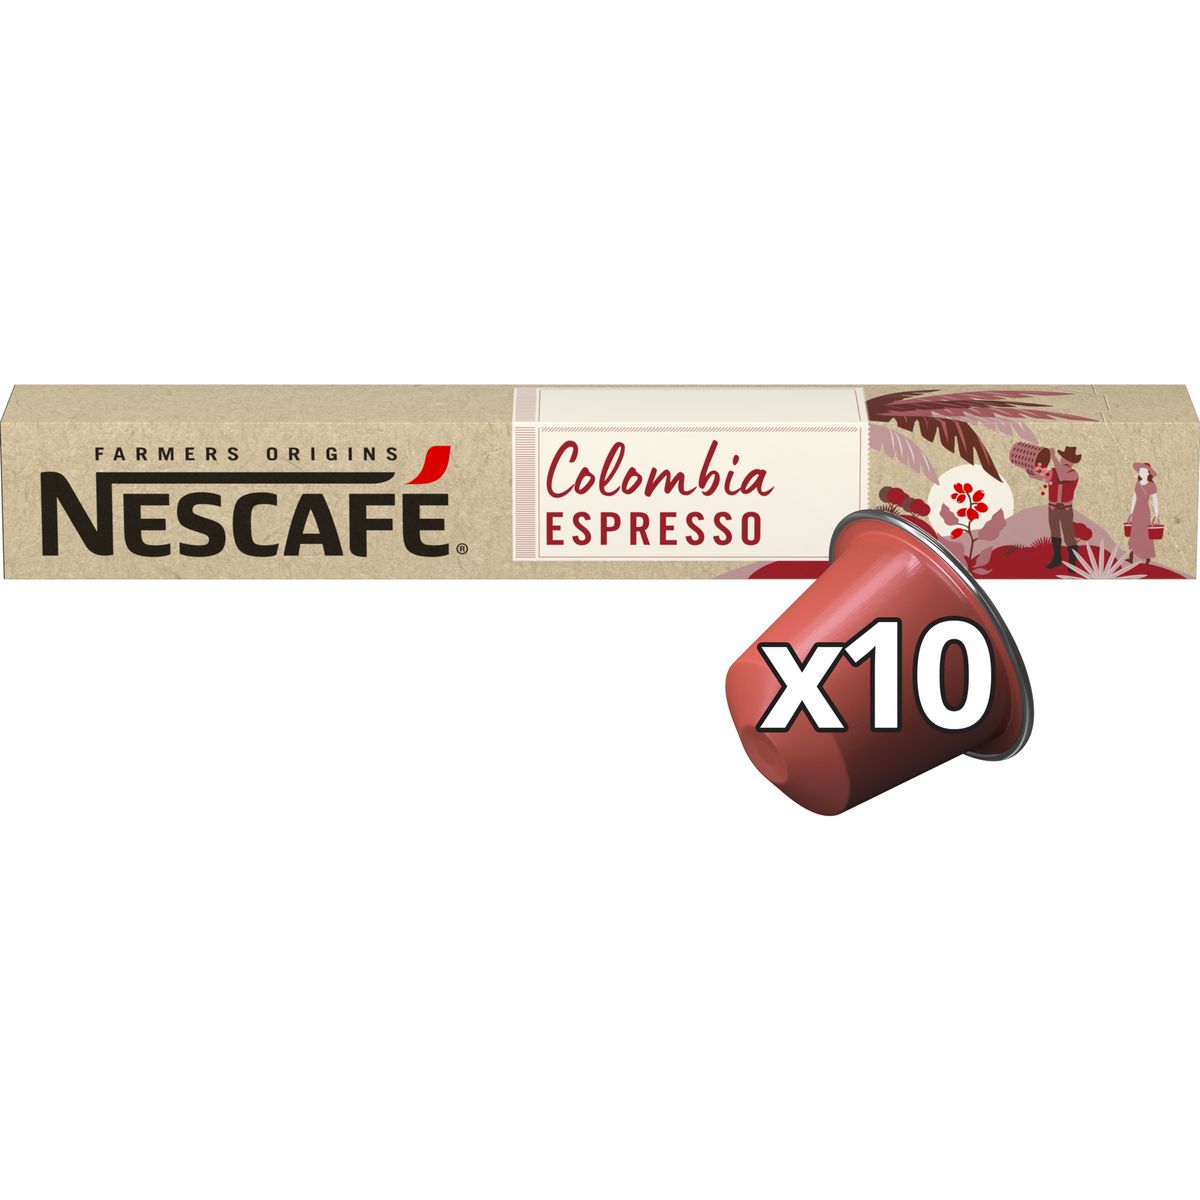 NESCAFE Farmers origins Capsules de café Colombia espresso intensité 6 compatibles Nespresso 10 capsules 53g